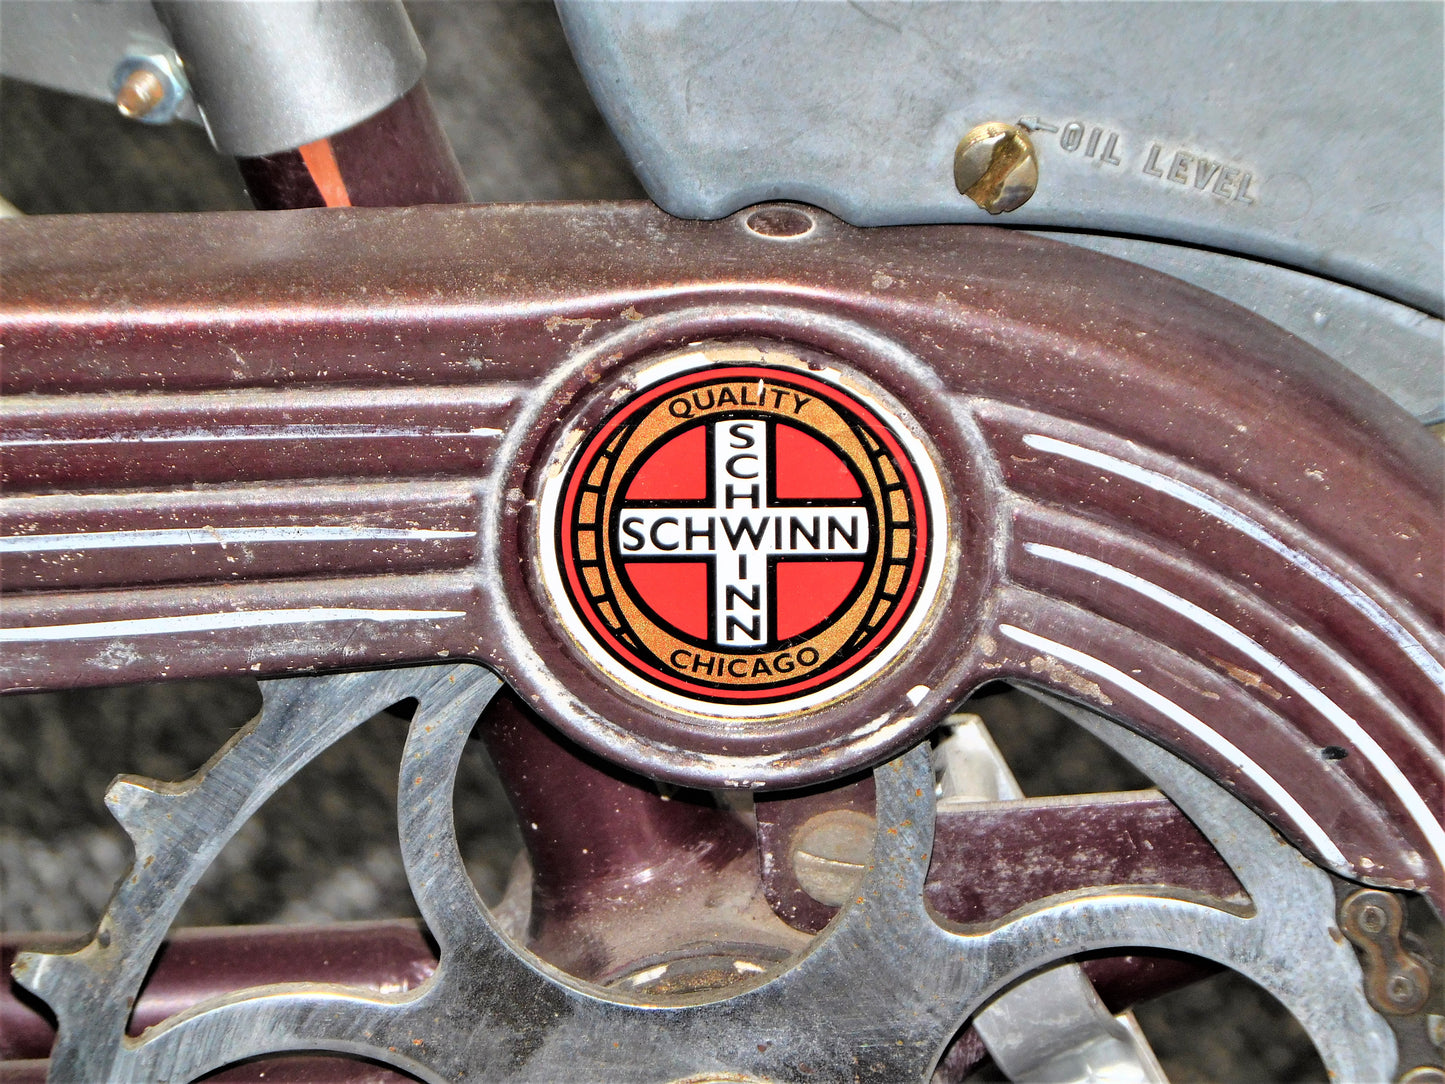 1950 Schwinn S-4 Bicycle w/ Whizzer Motor